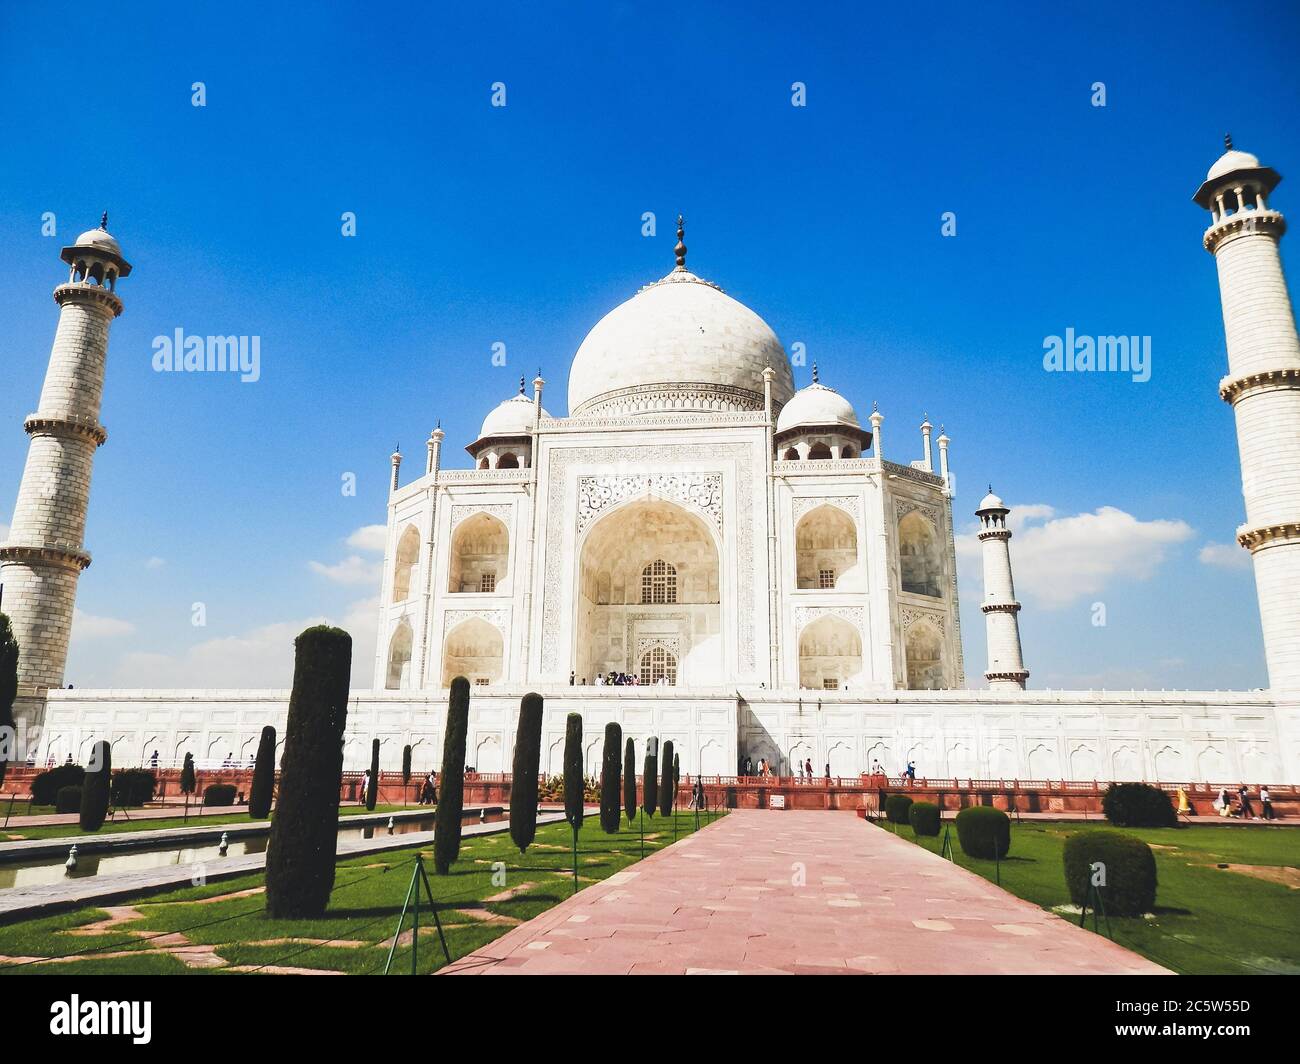 Taj Mahal, Agra, Uttar Pradesh, Nordindien. Eines der Neuen Sieben Weltwunder und eines der meistbesuchten UNESCO-Welterbestätten Indiens. Stockfoto